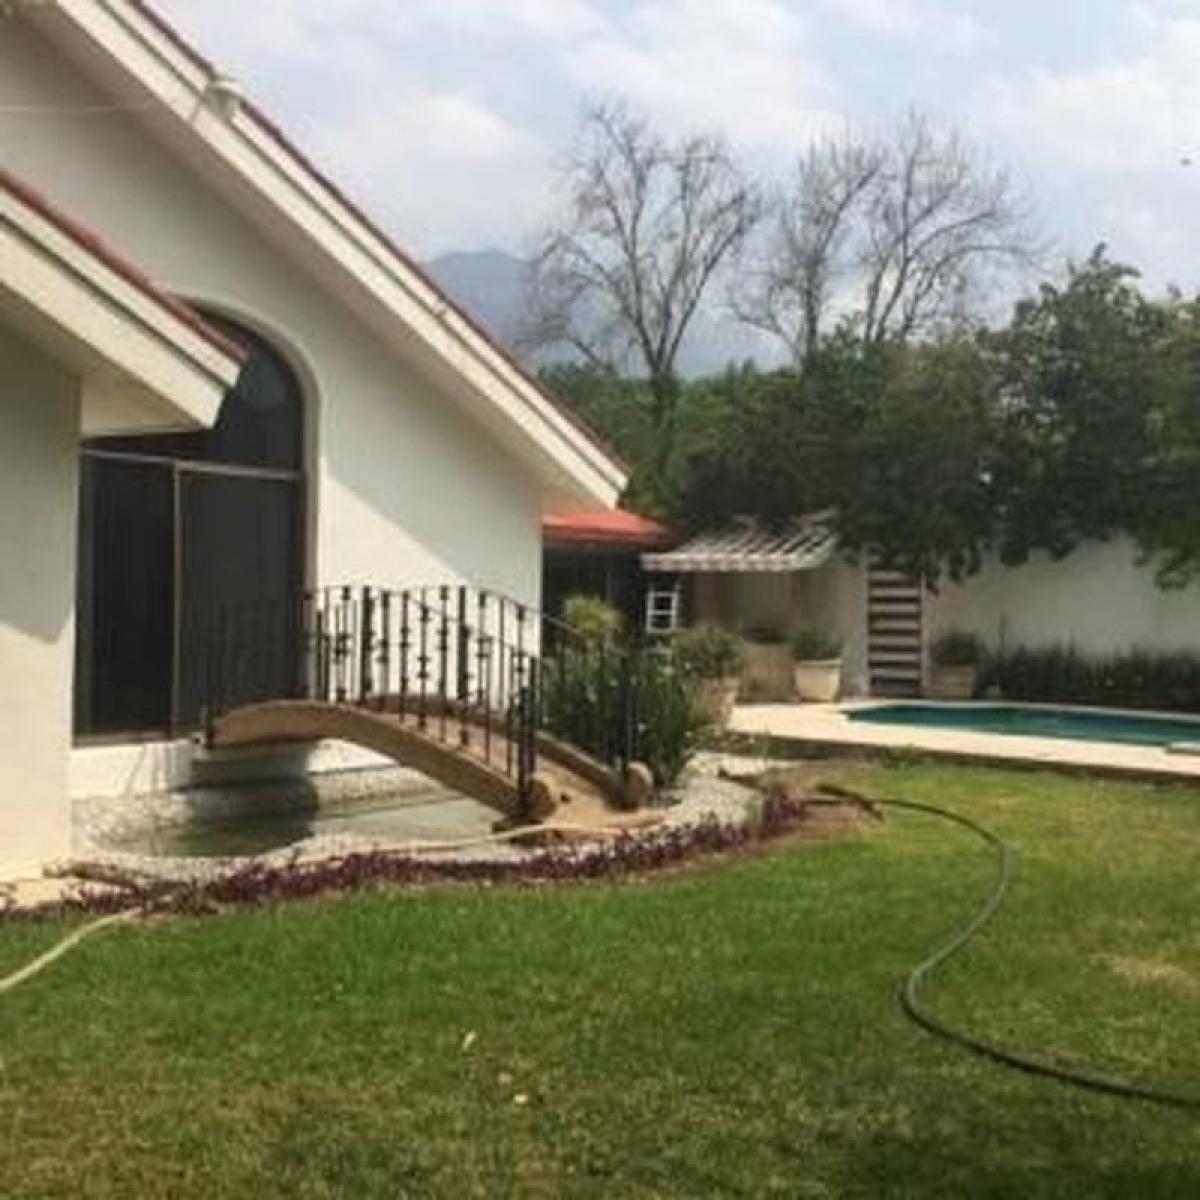 Picture of Home For Sale in Nuevo Leon, Nuevo Leon, Mexico